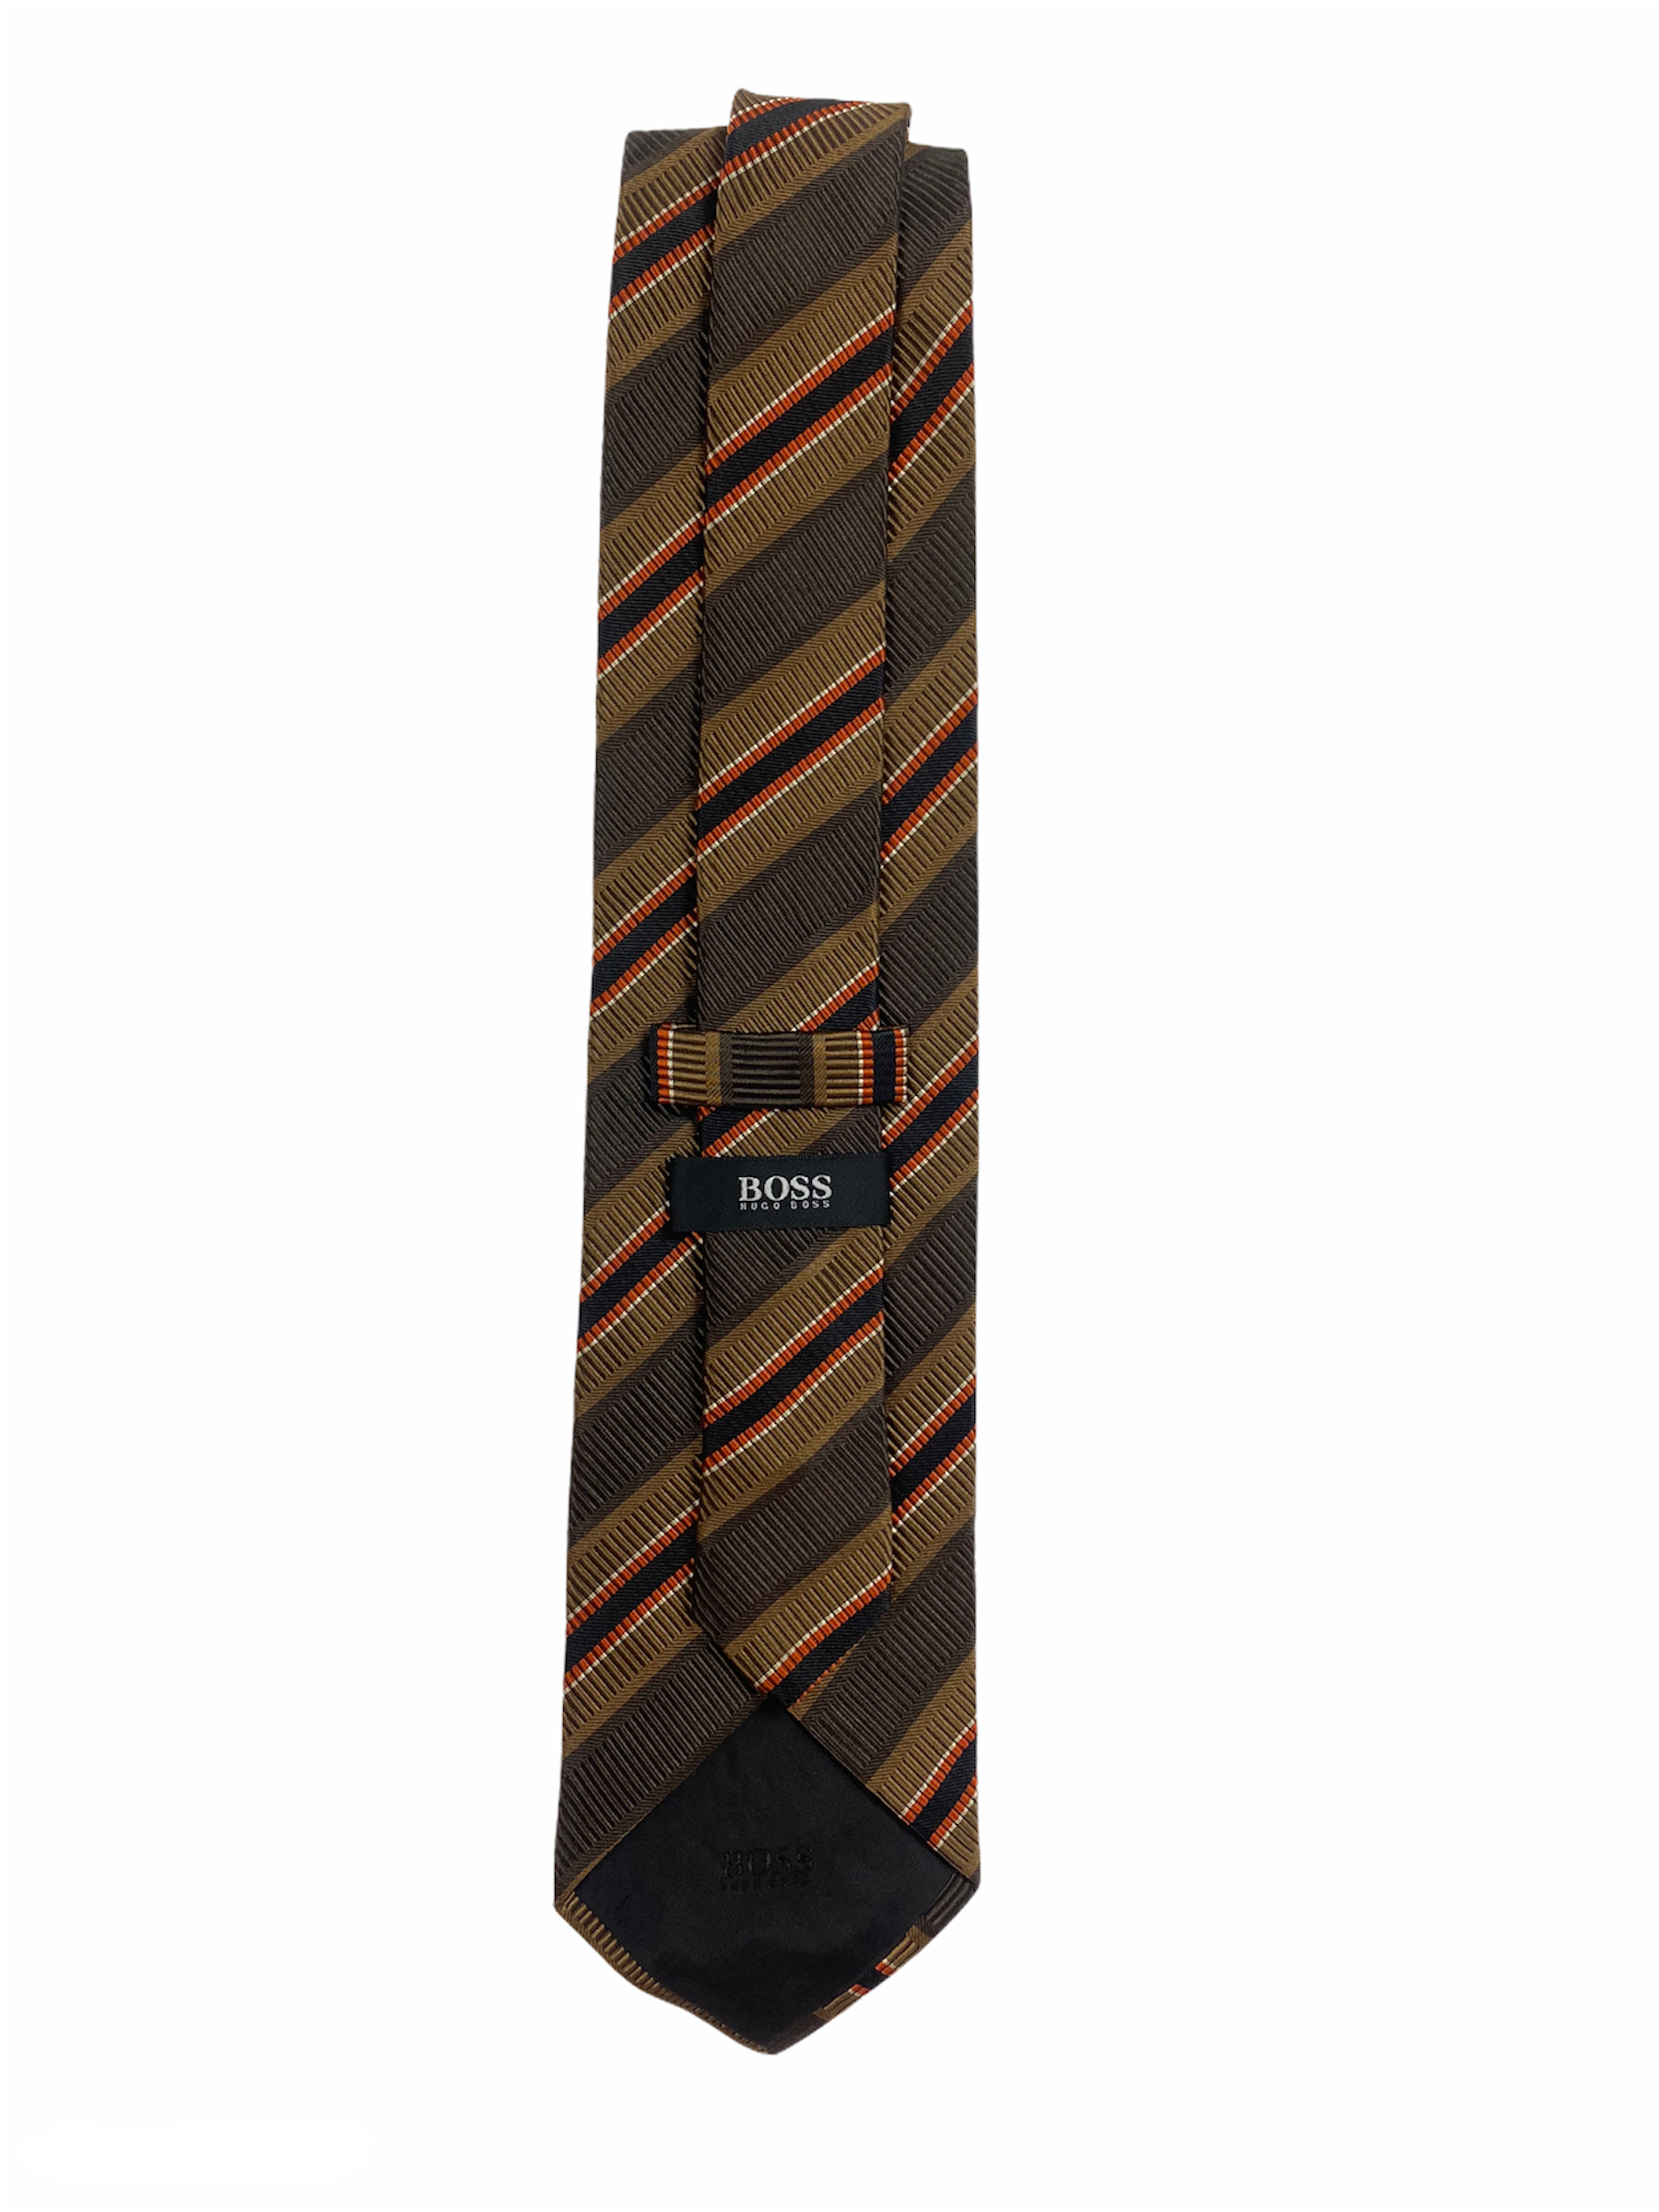 Cravate Boss 55 % soie et 45 % coton, à rayures diagonales d'un camaïeu de marron.